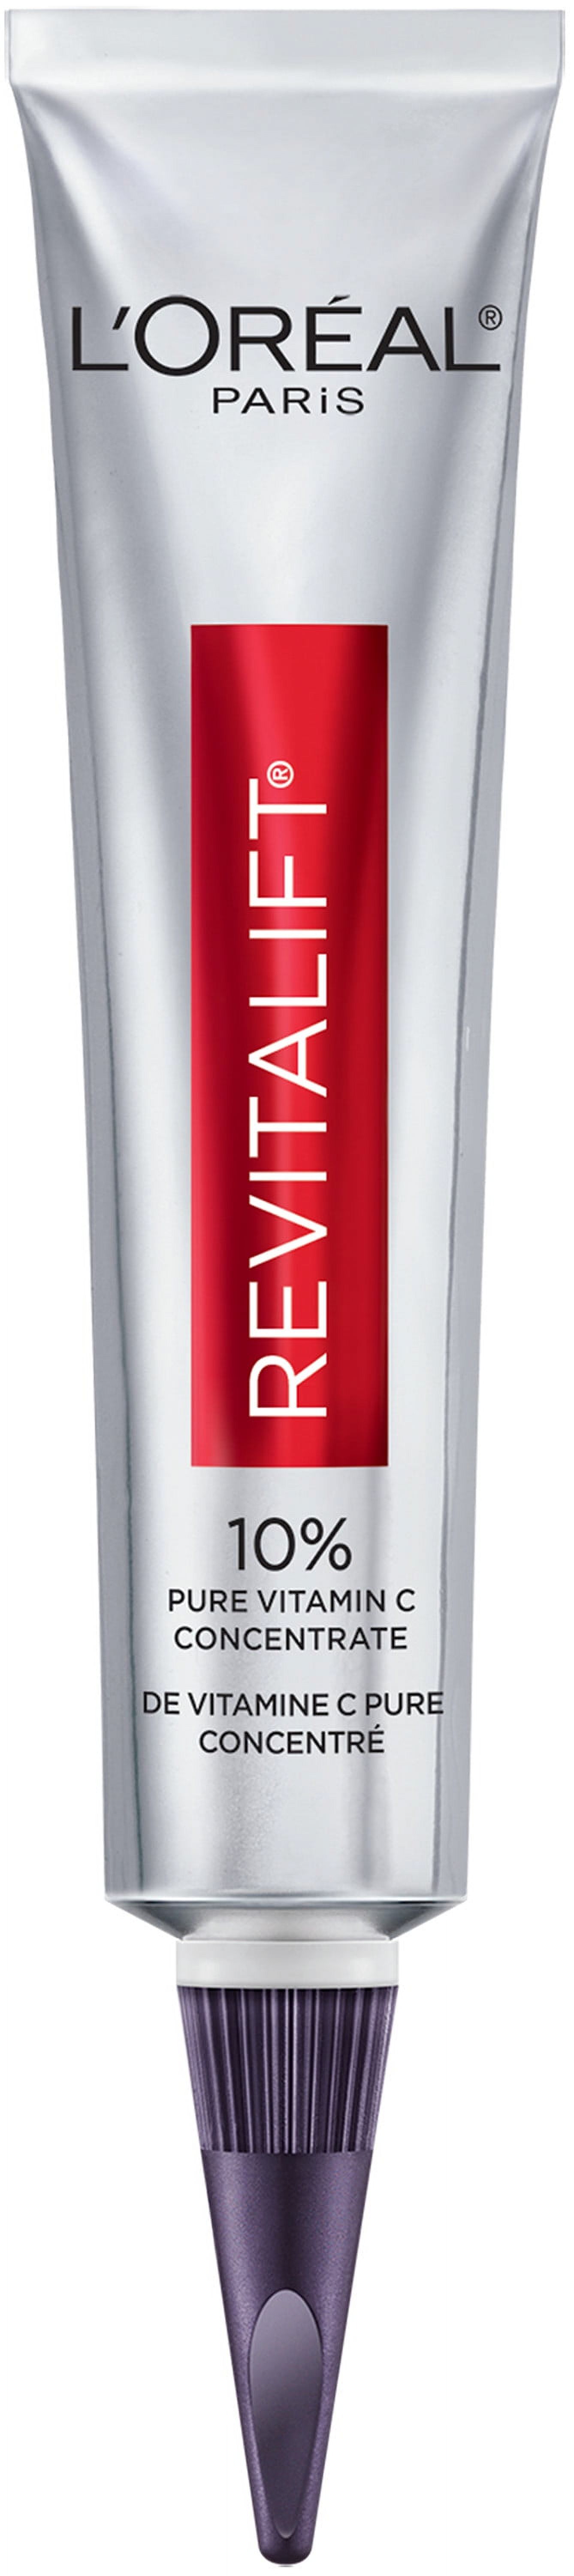 L'Oreal Paris Revitalift Pure Vitamin C Concentrate Serum, 1 fl oz - image 1 of 8